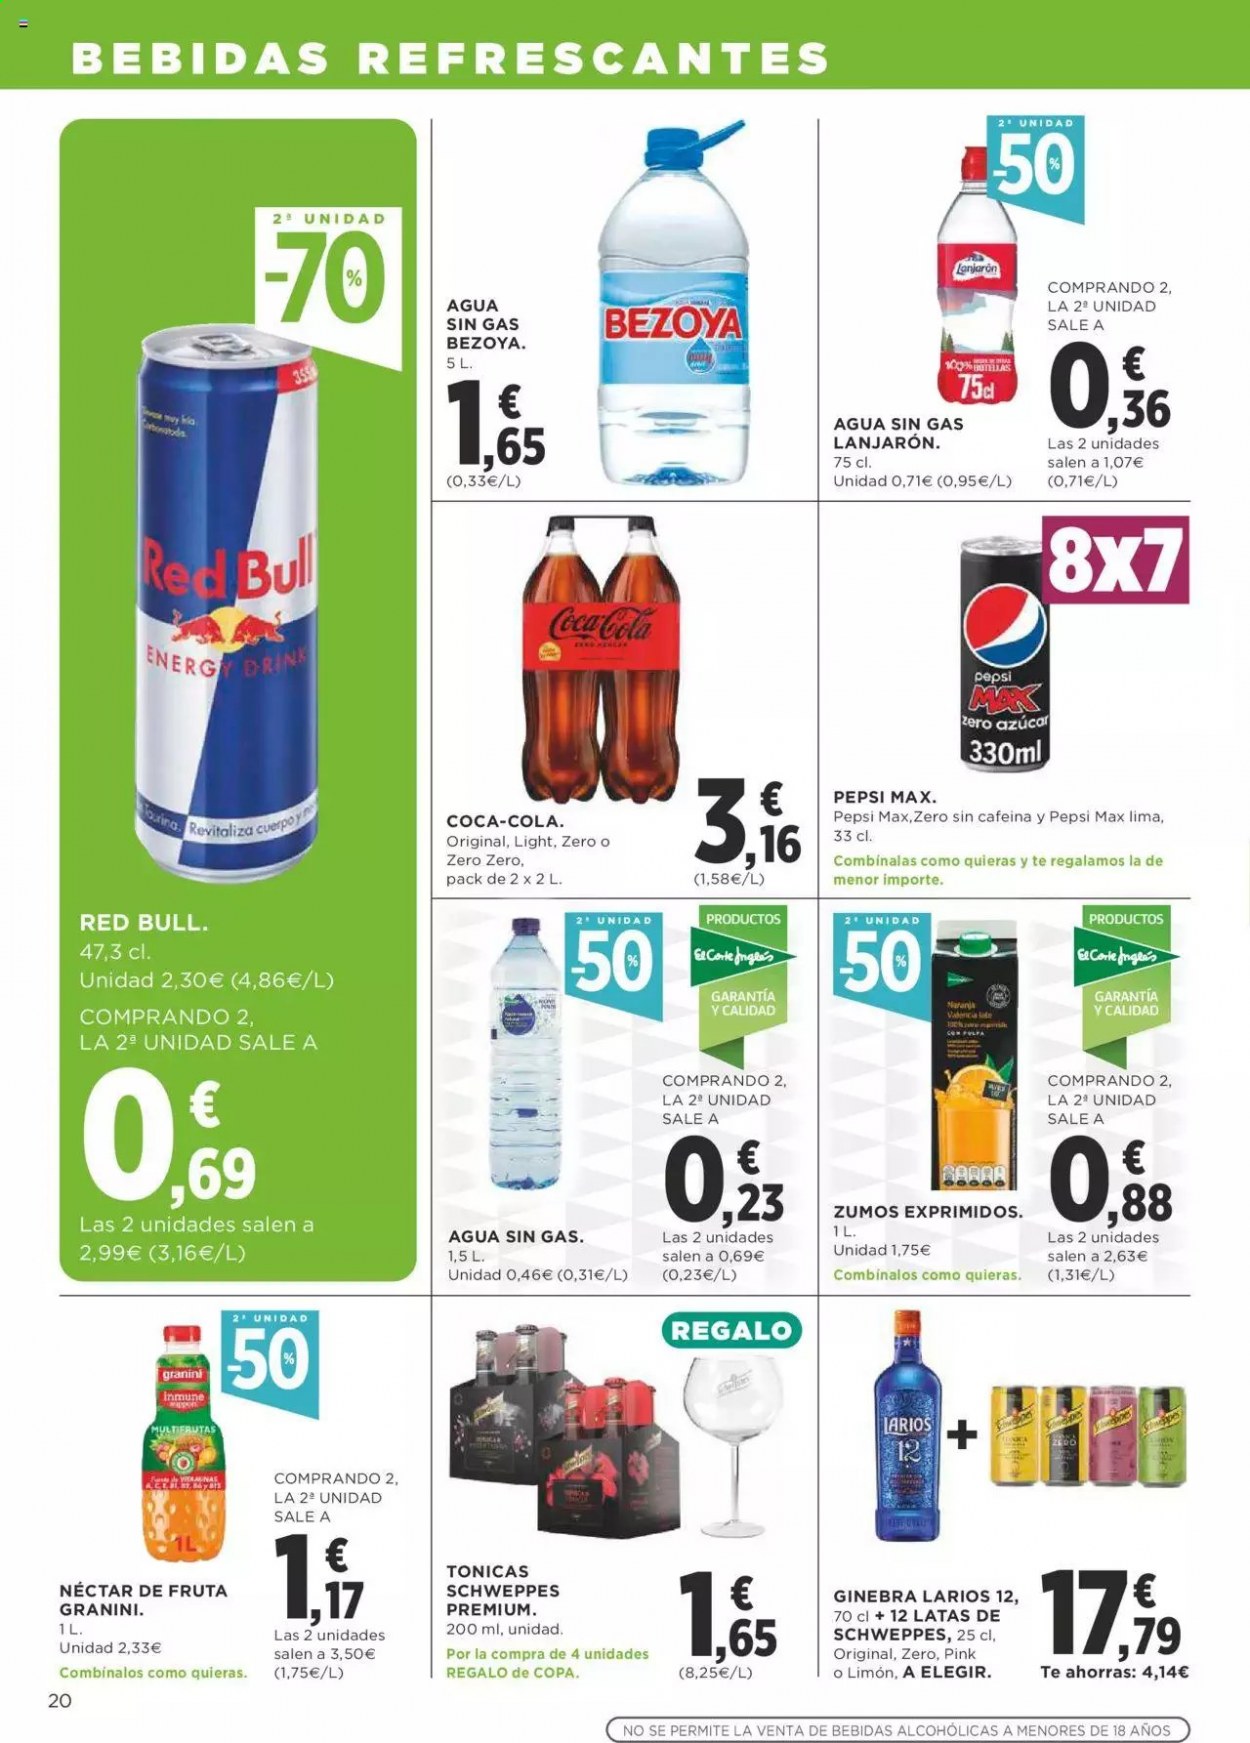 thumbnail - Folleto actual Supercor supermercados - 06/05/21 - 19/05/21 - Ventas - nectar, Coca-cola, Red Bull, Pepsi, Schweppes, agua, agua natural, Bezoya, gin, Larios. Página 20.